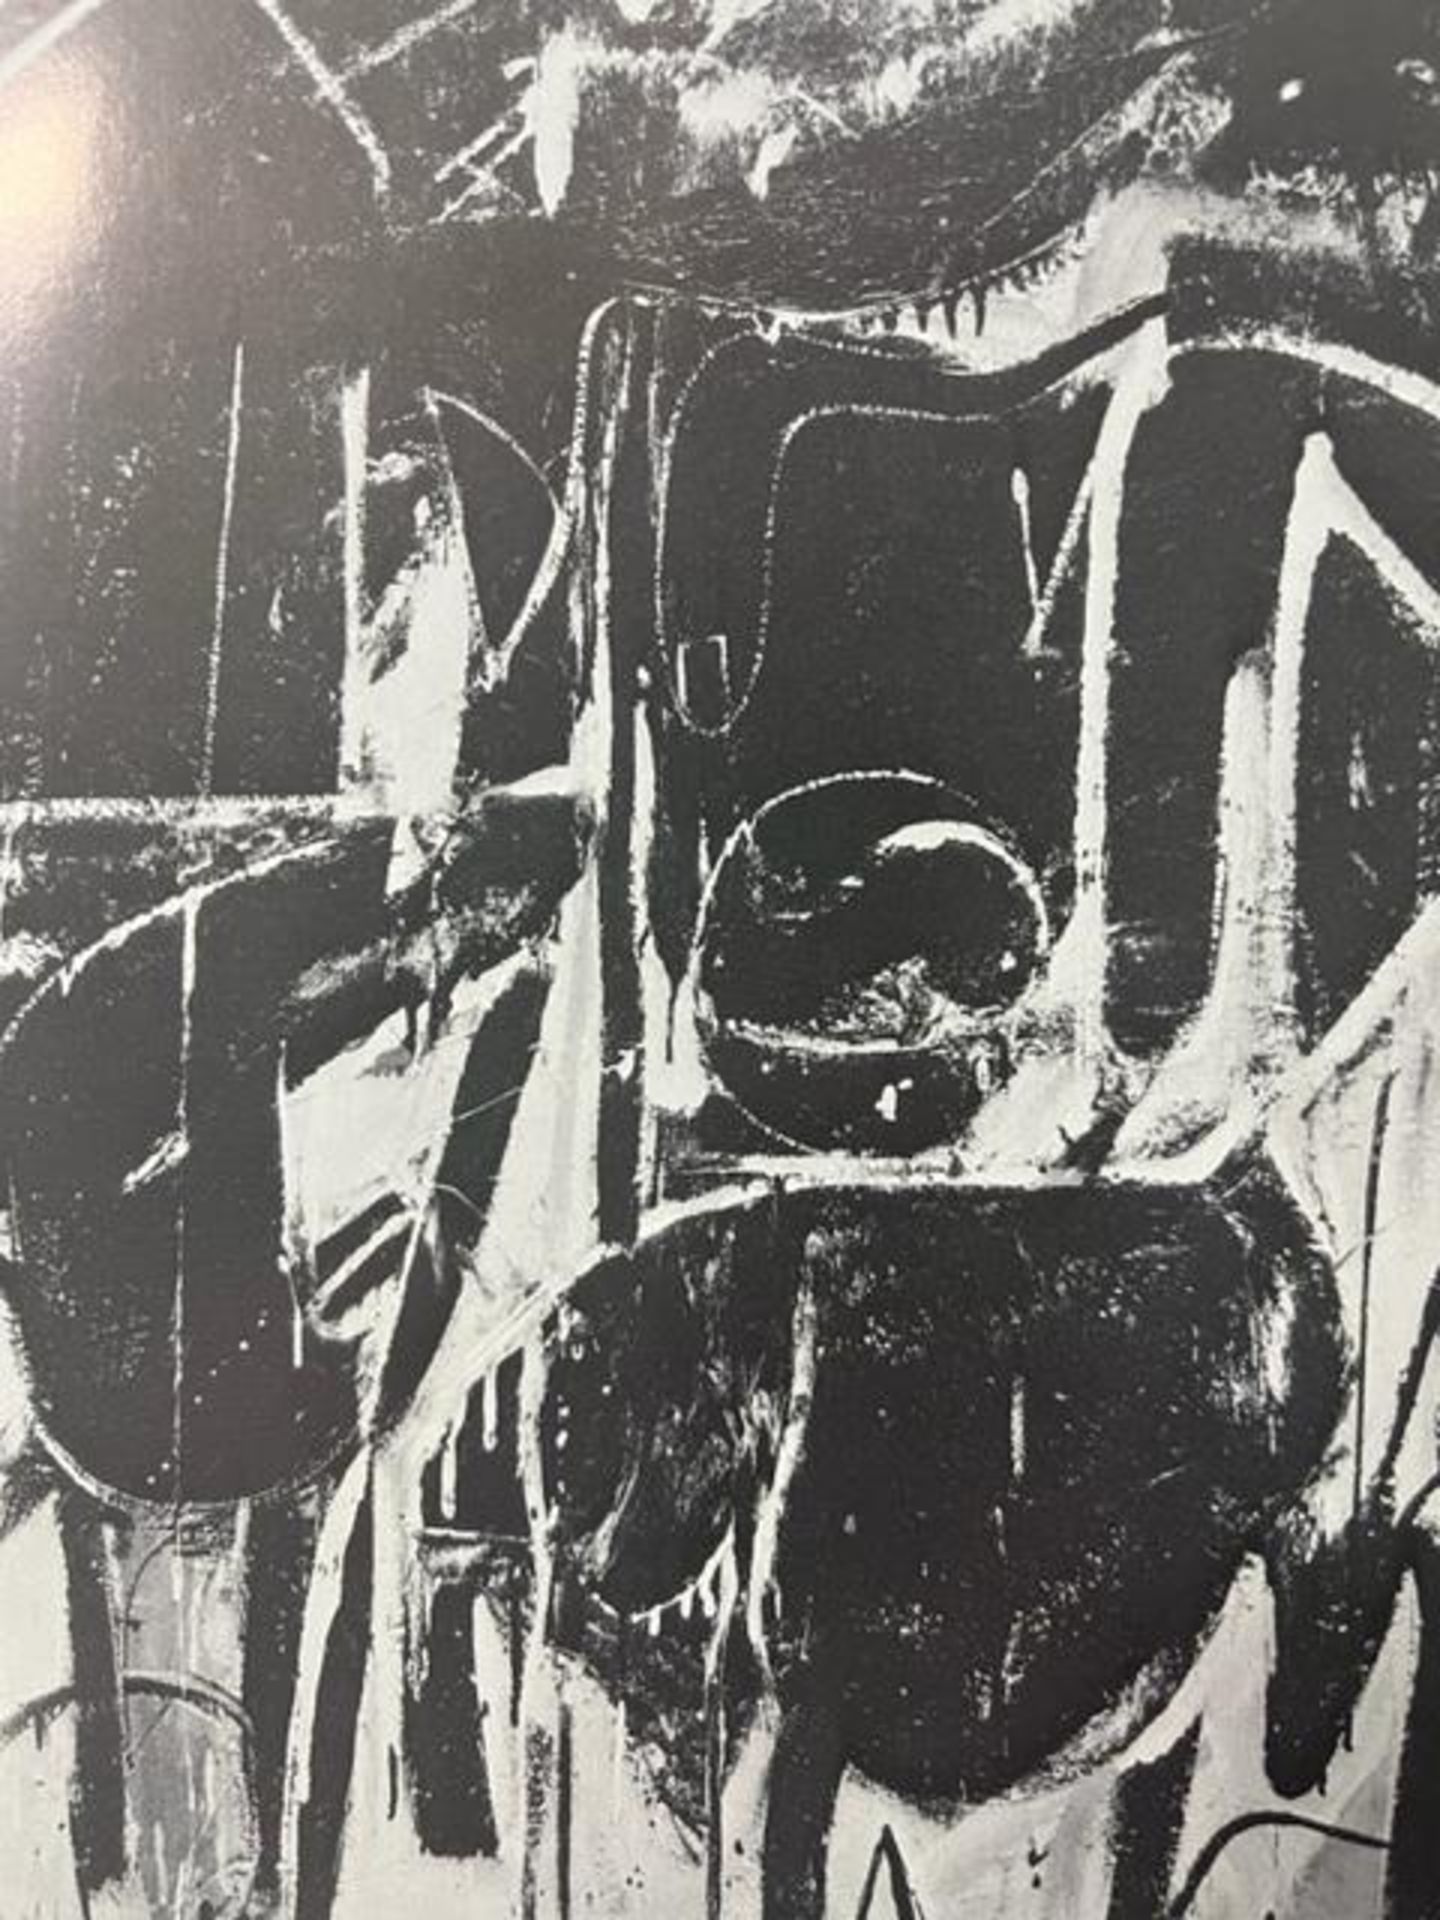 Willem de Kooning "Black Friday" Print. - Bild 4 aus 6